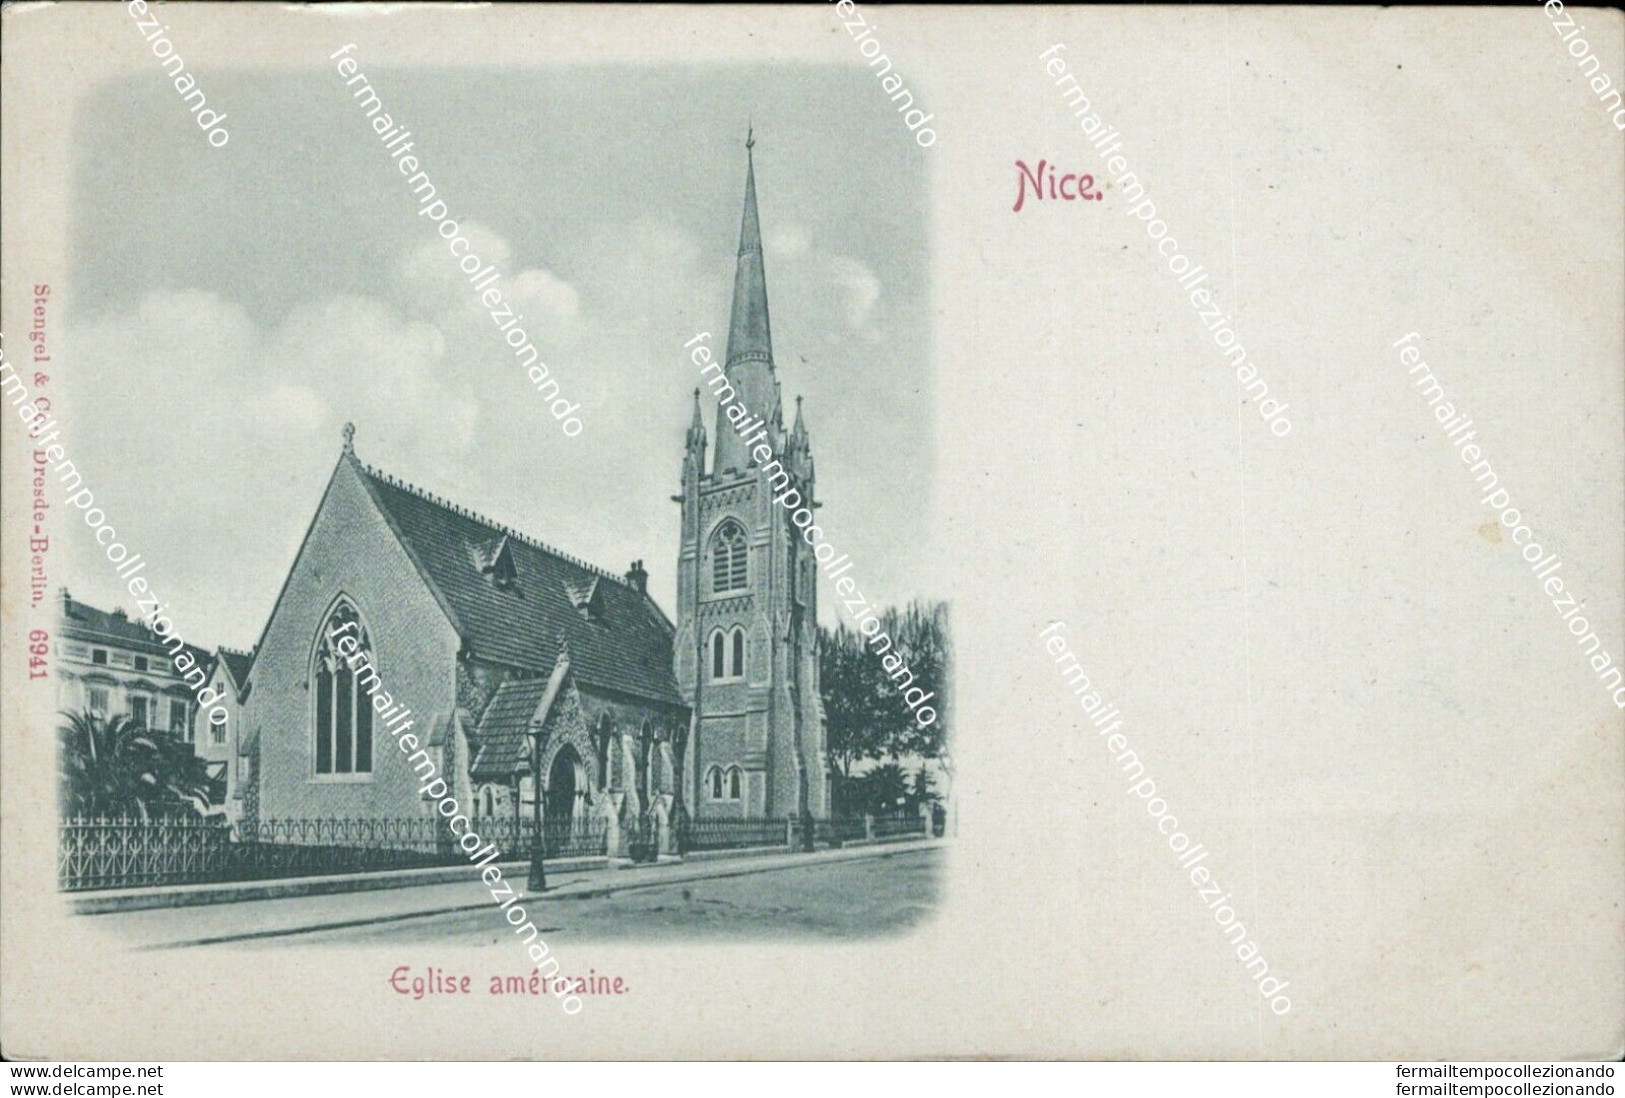 Bd78 Cartolina Nice Eglise Americaine - Monuments